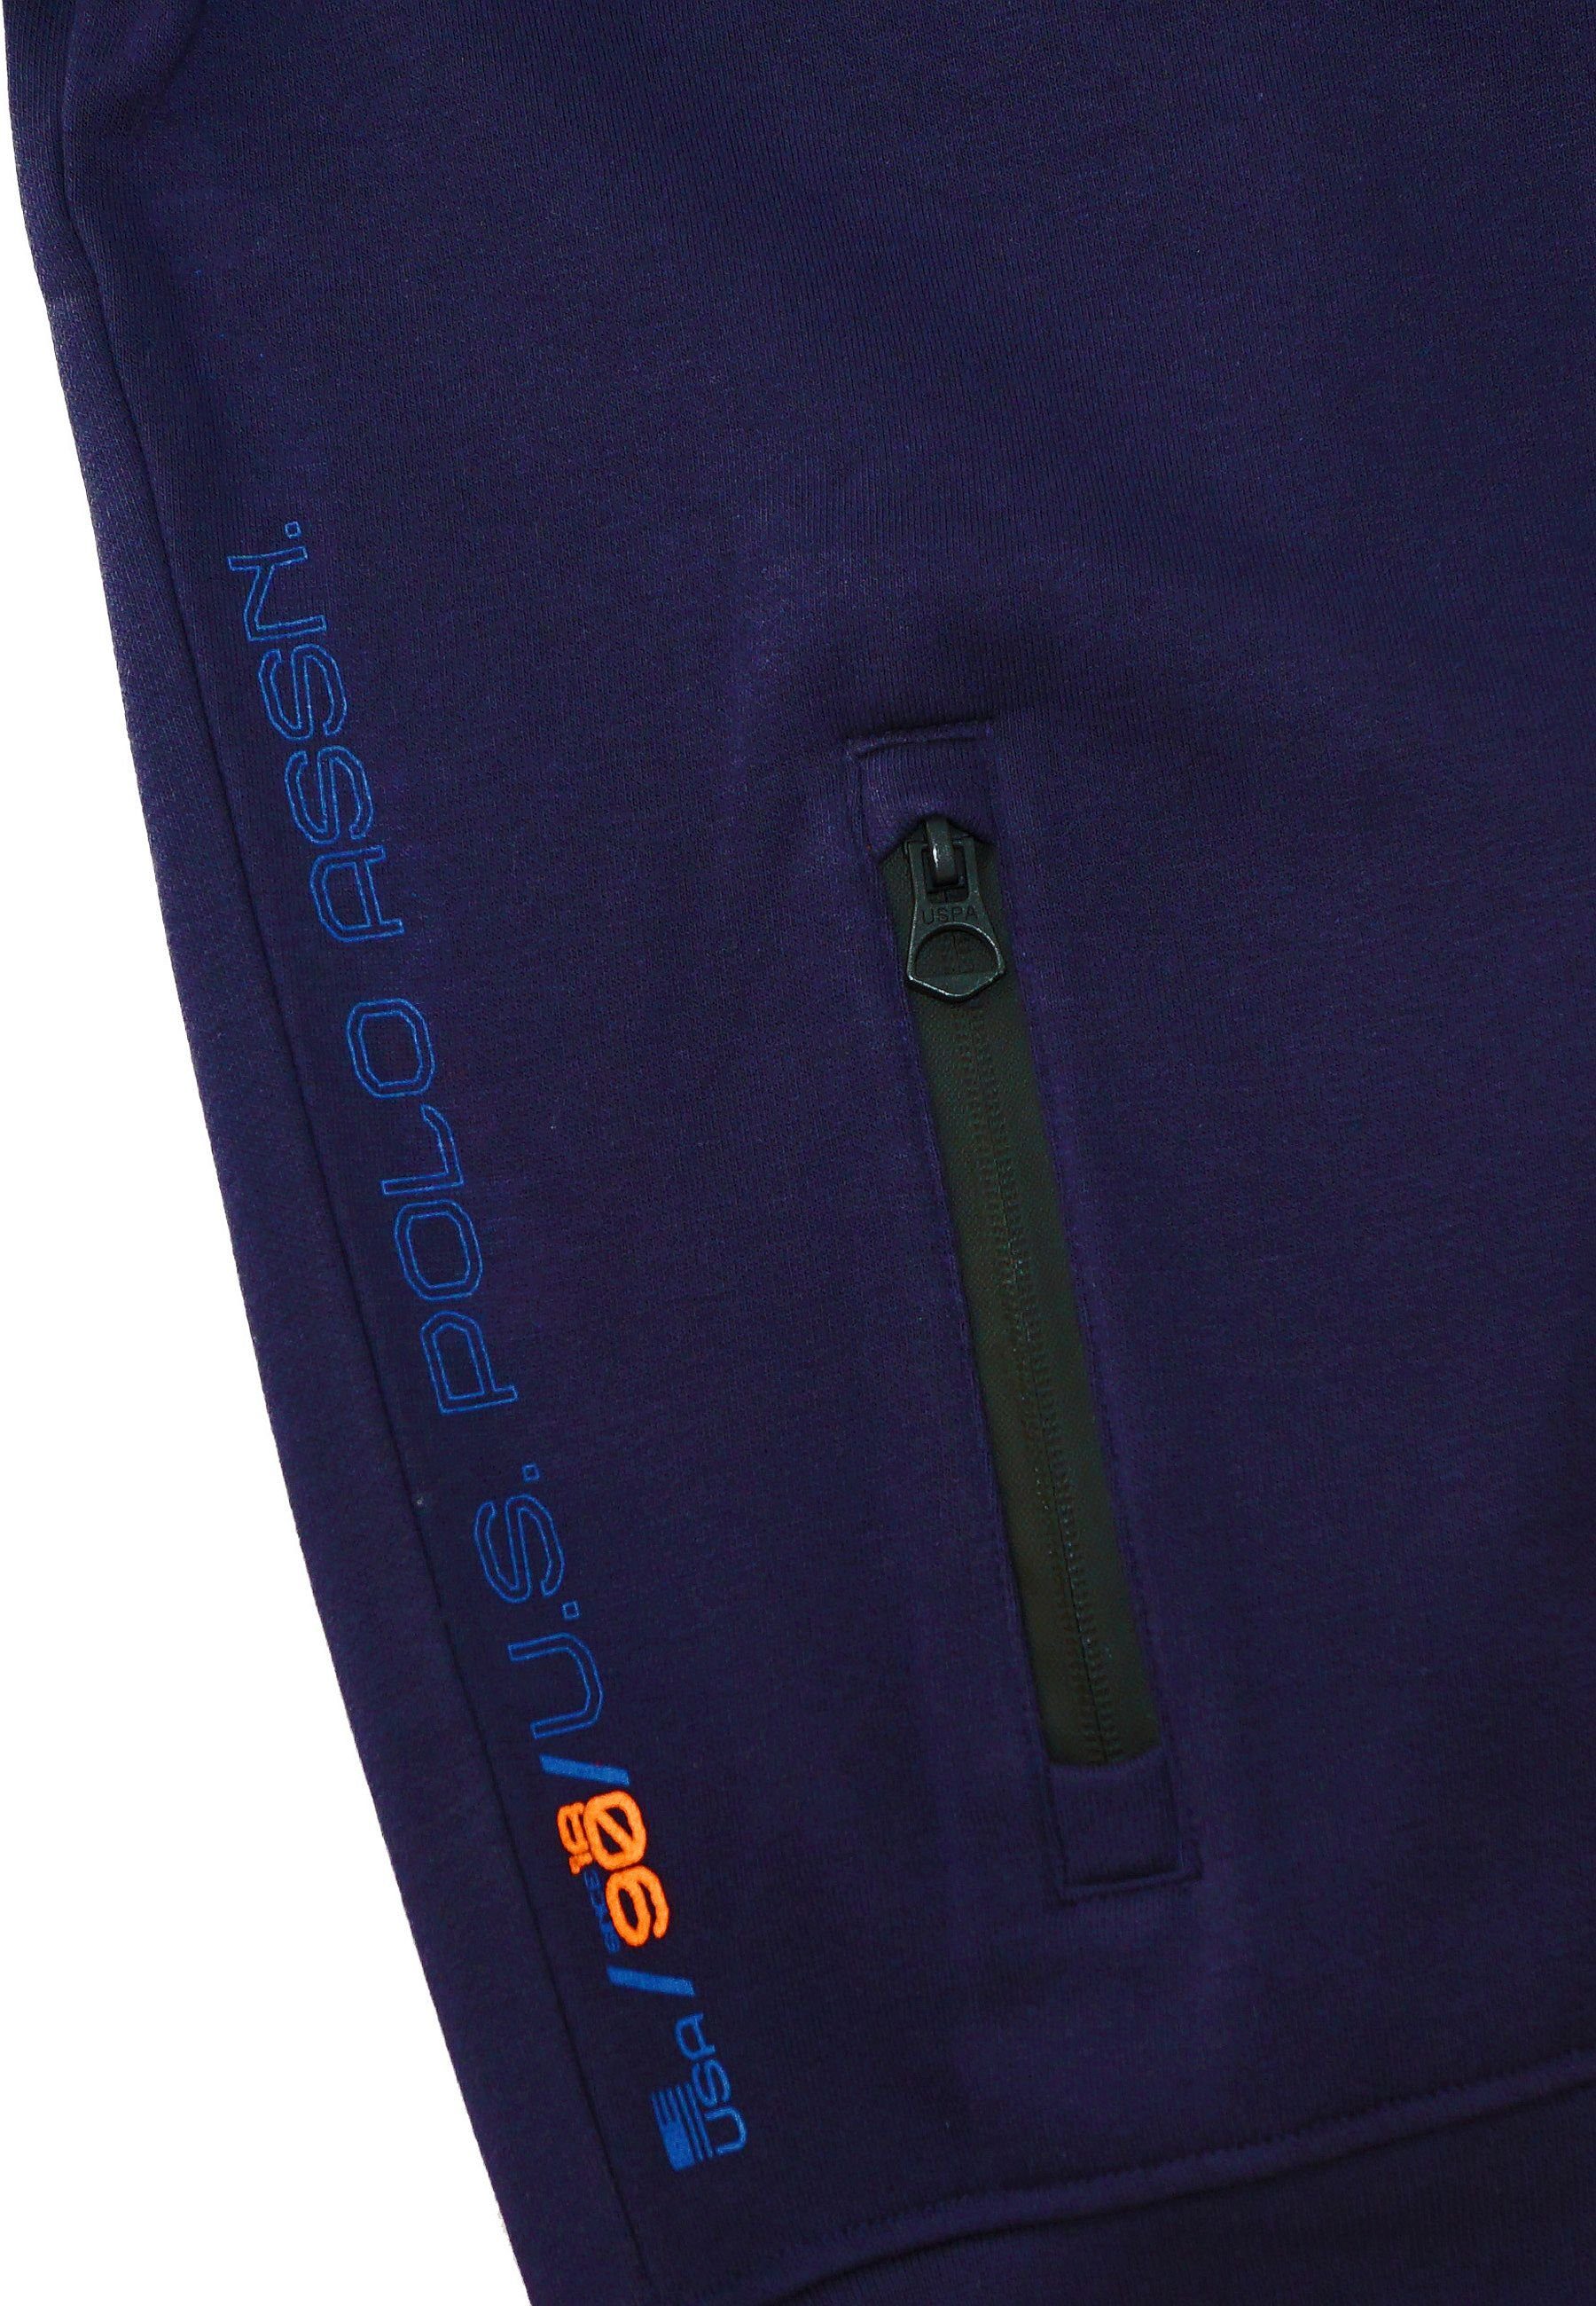 dunkelblau Full Sweatjacke Zip Pro Sweatjacket Jacke U.S. No.3 Polo Assn